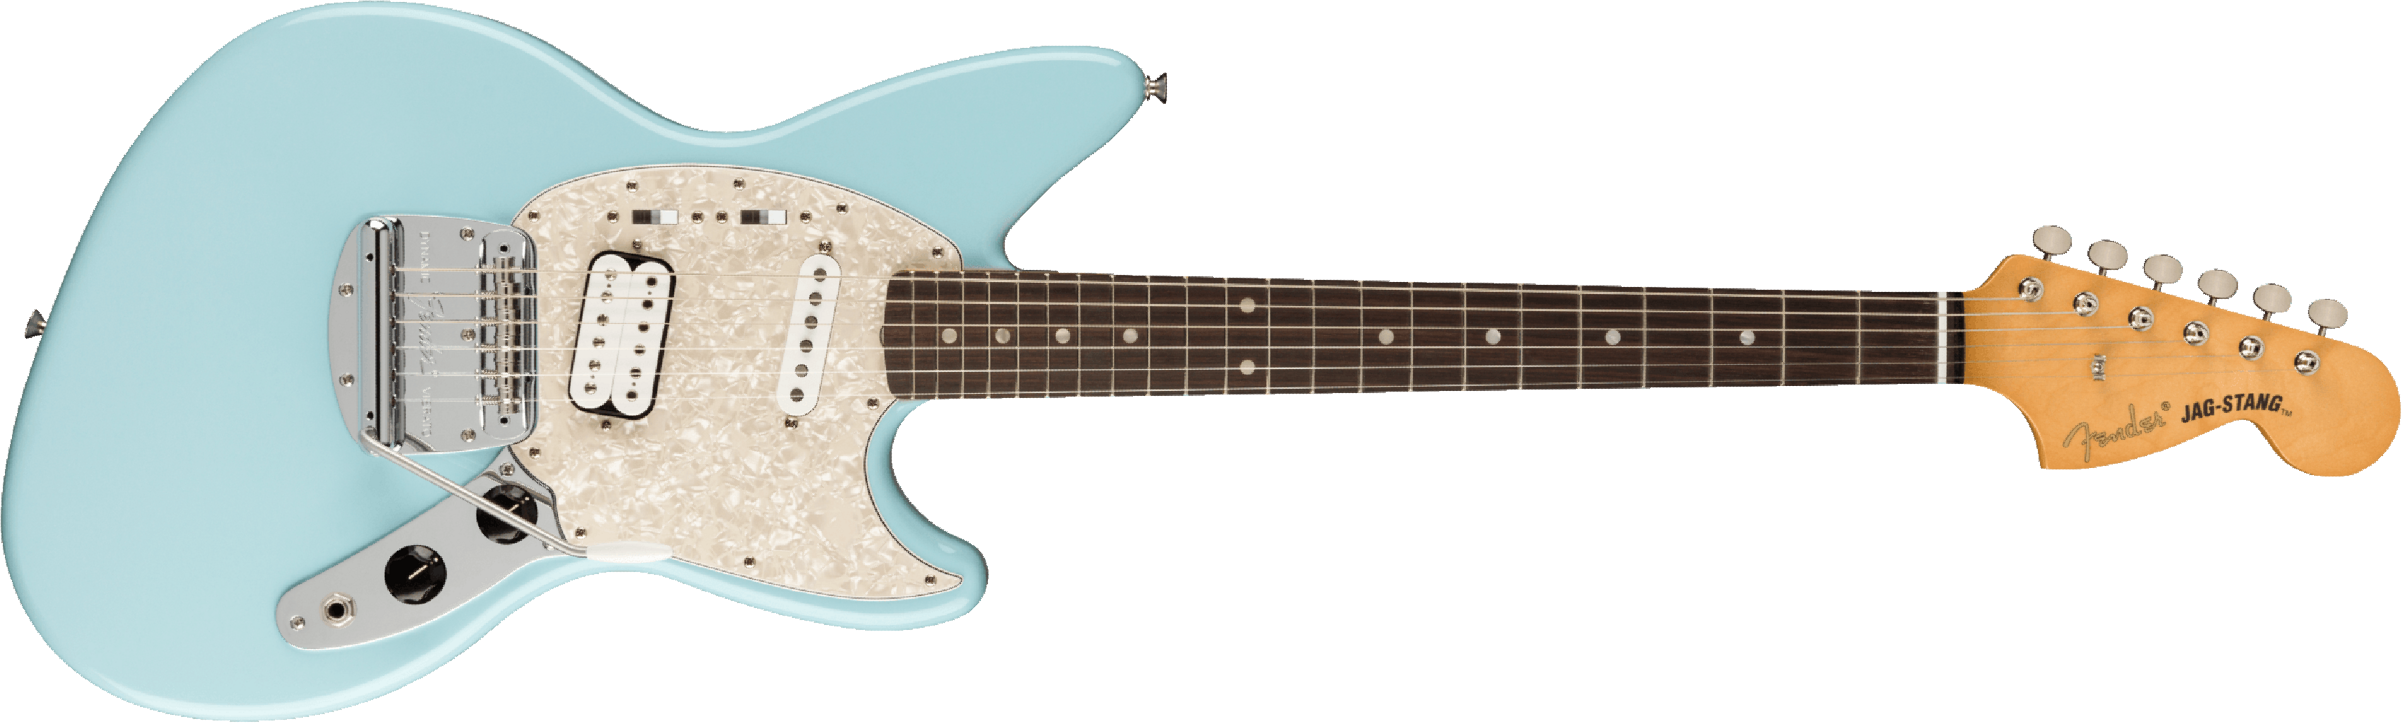 Fender Jag-stang Kurt Cobain Artist Hs Trem Rw - Sonic Blue - Guitare Électrique RÉtro Rock - Main picture